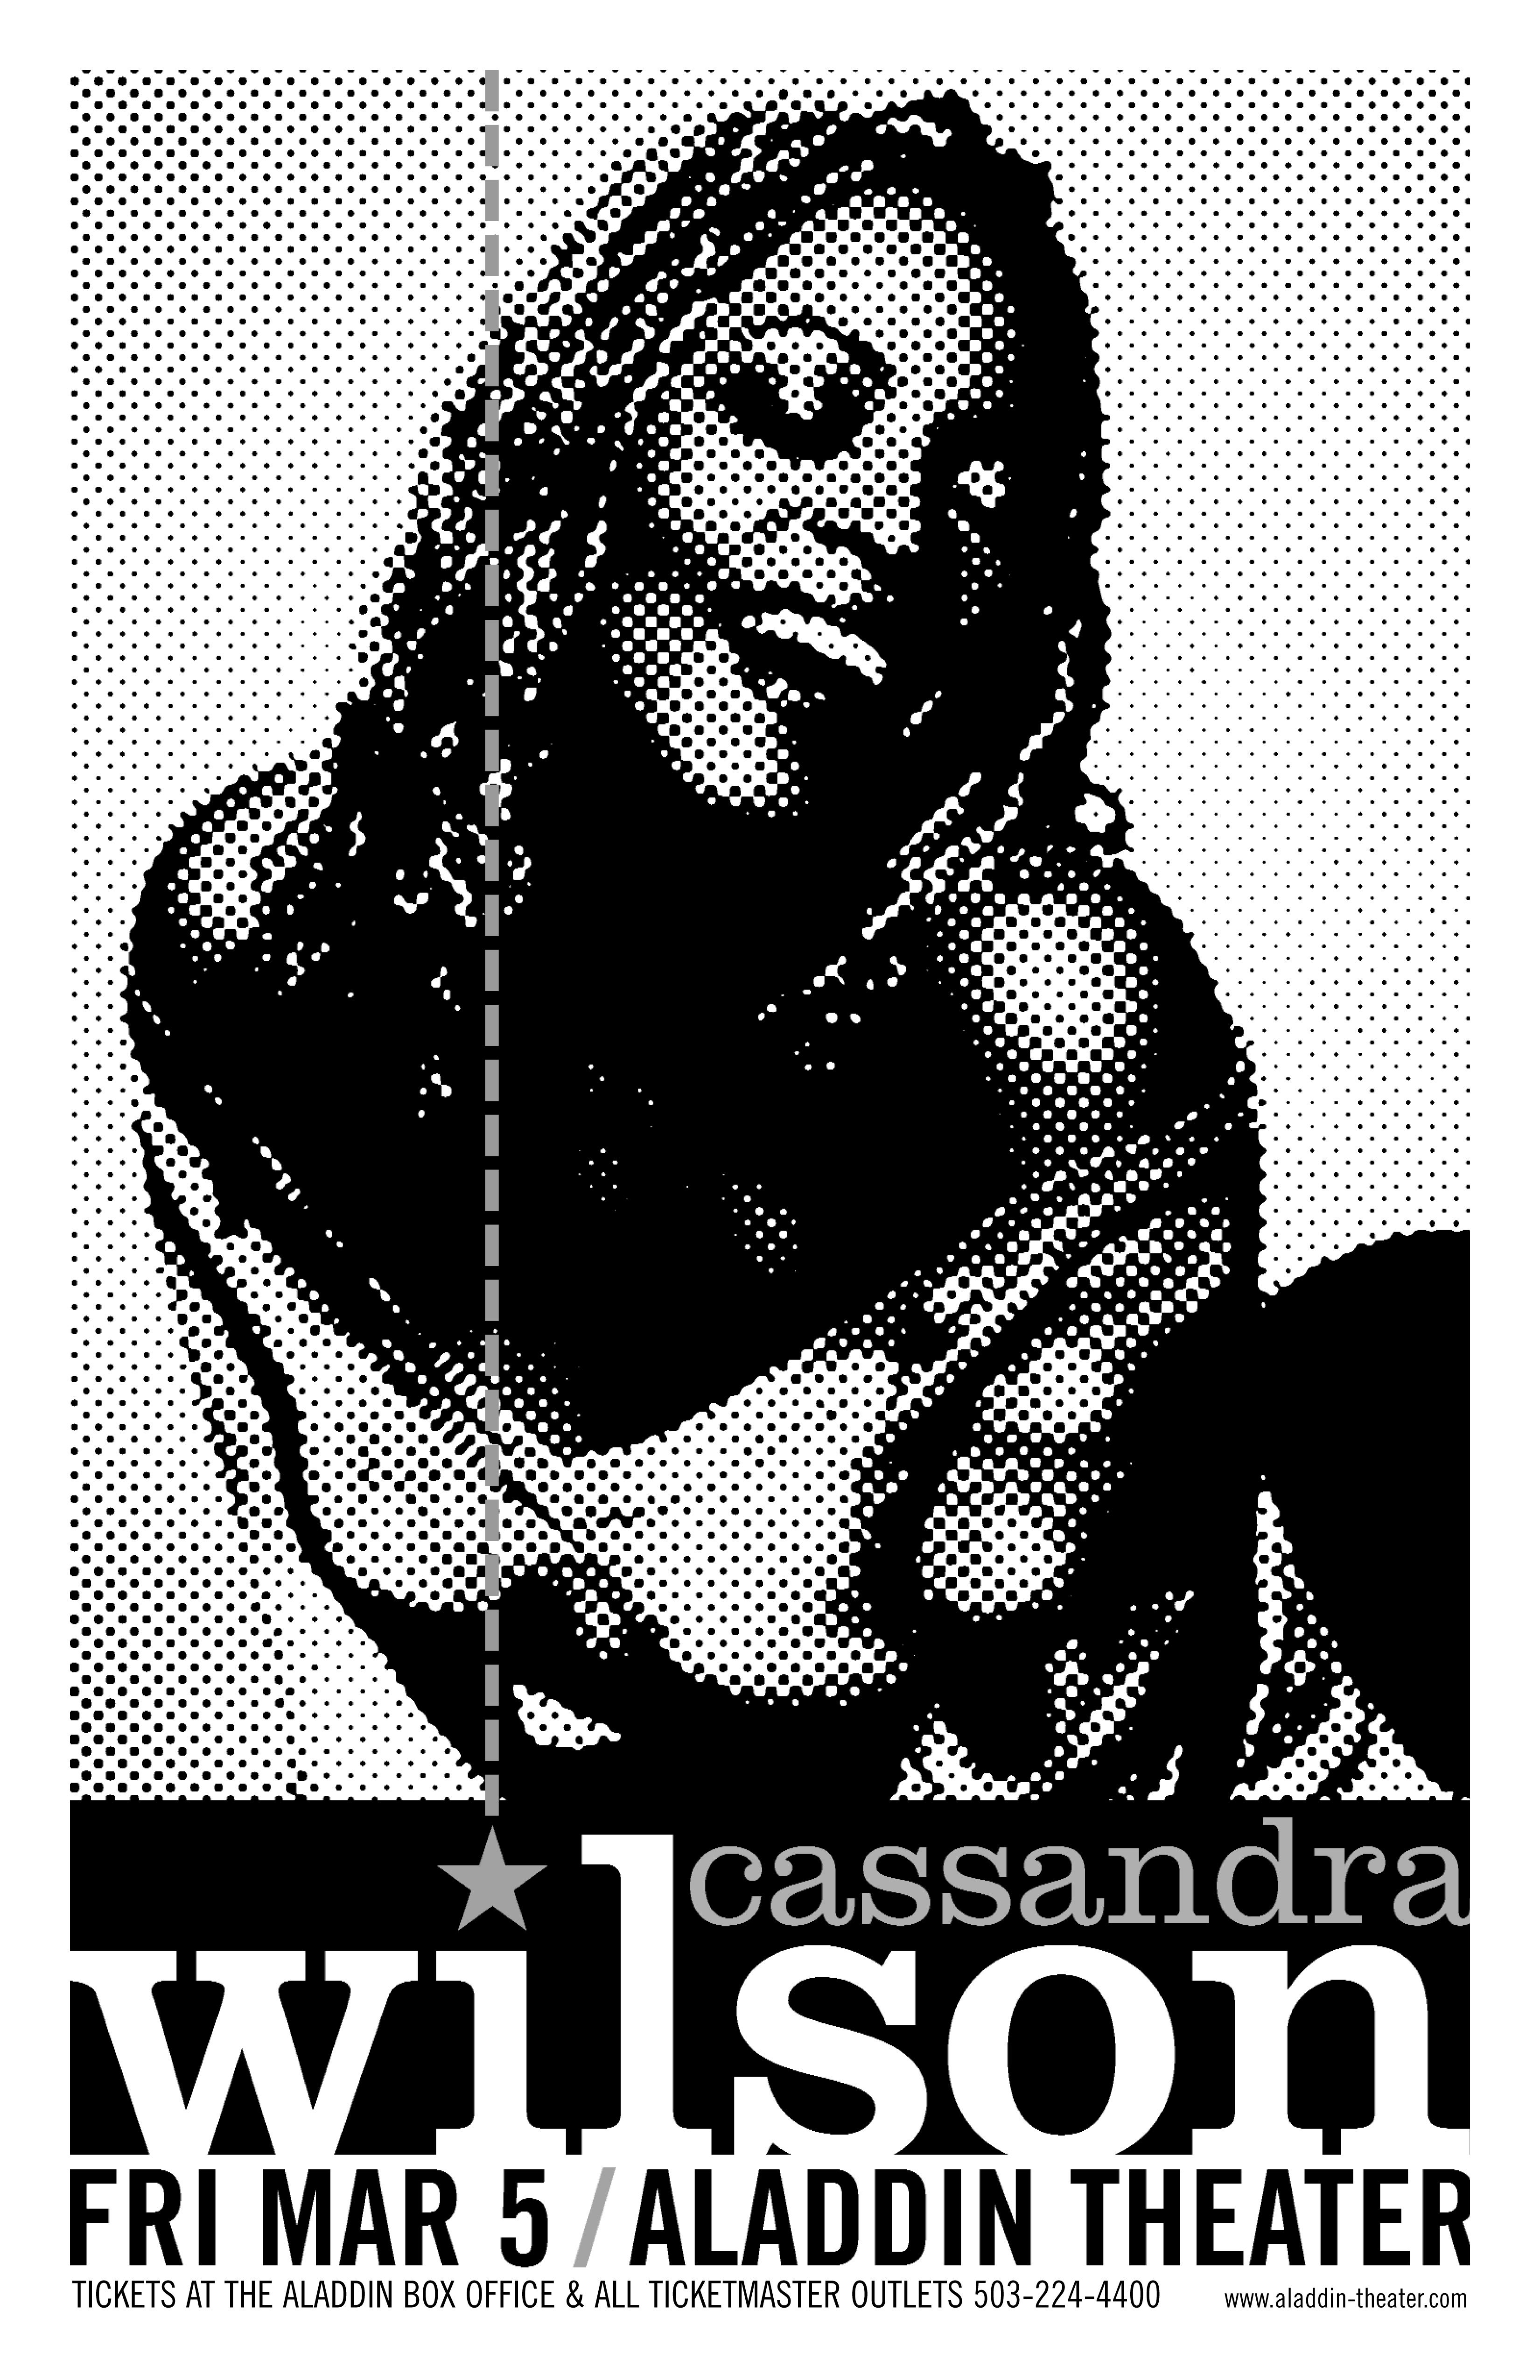 MXP-142.22 Cassandra Wilson 1999 Aladdin Theater  Mar 5 Concert Poster